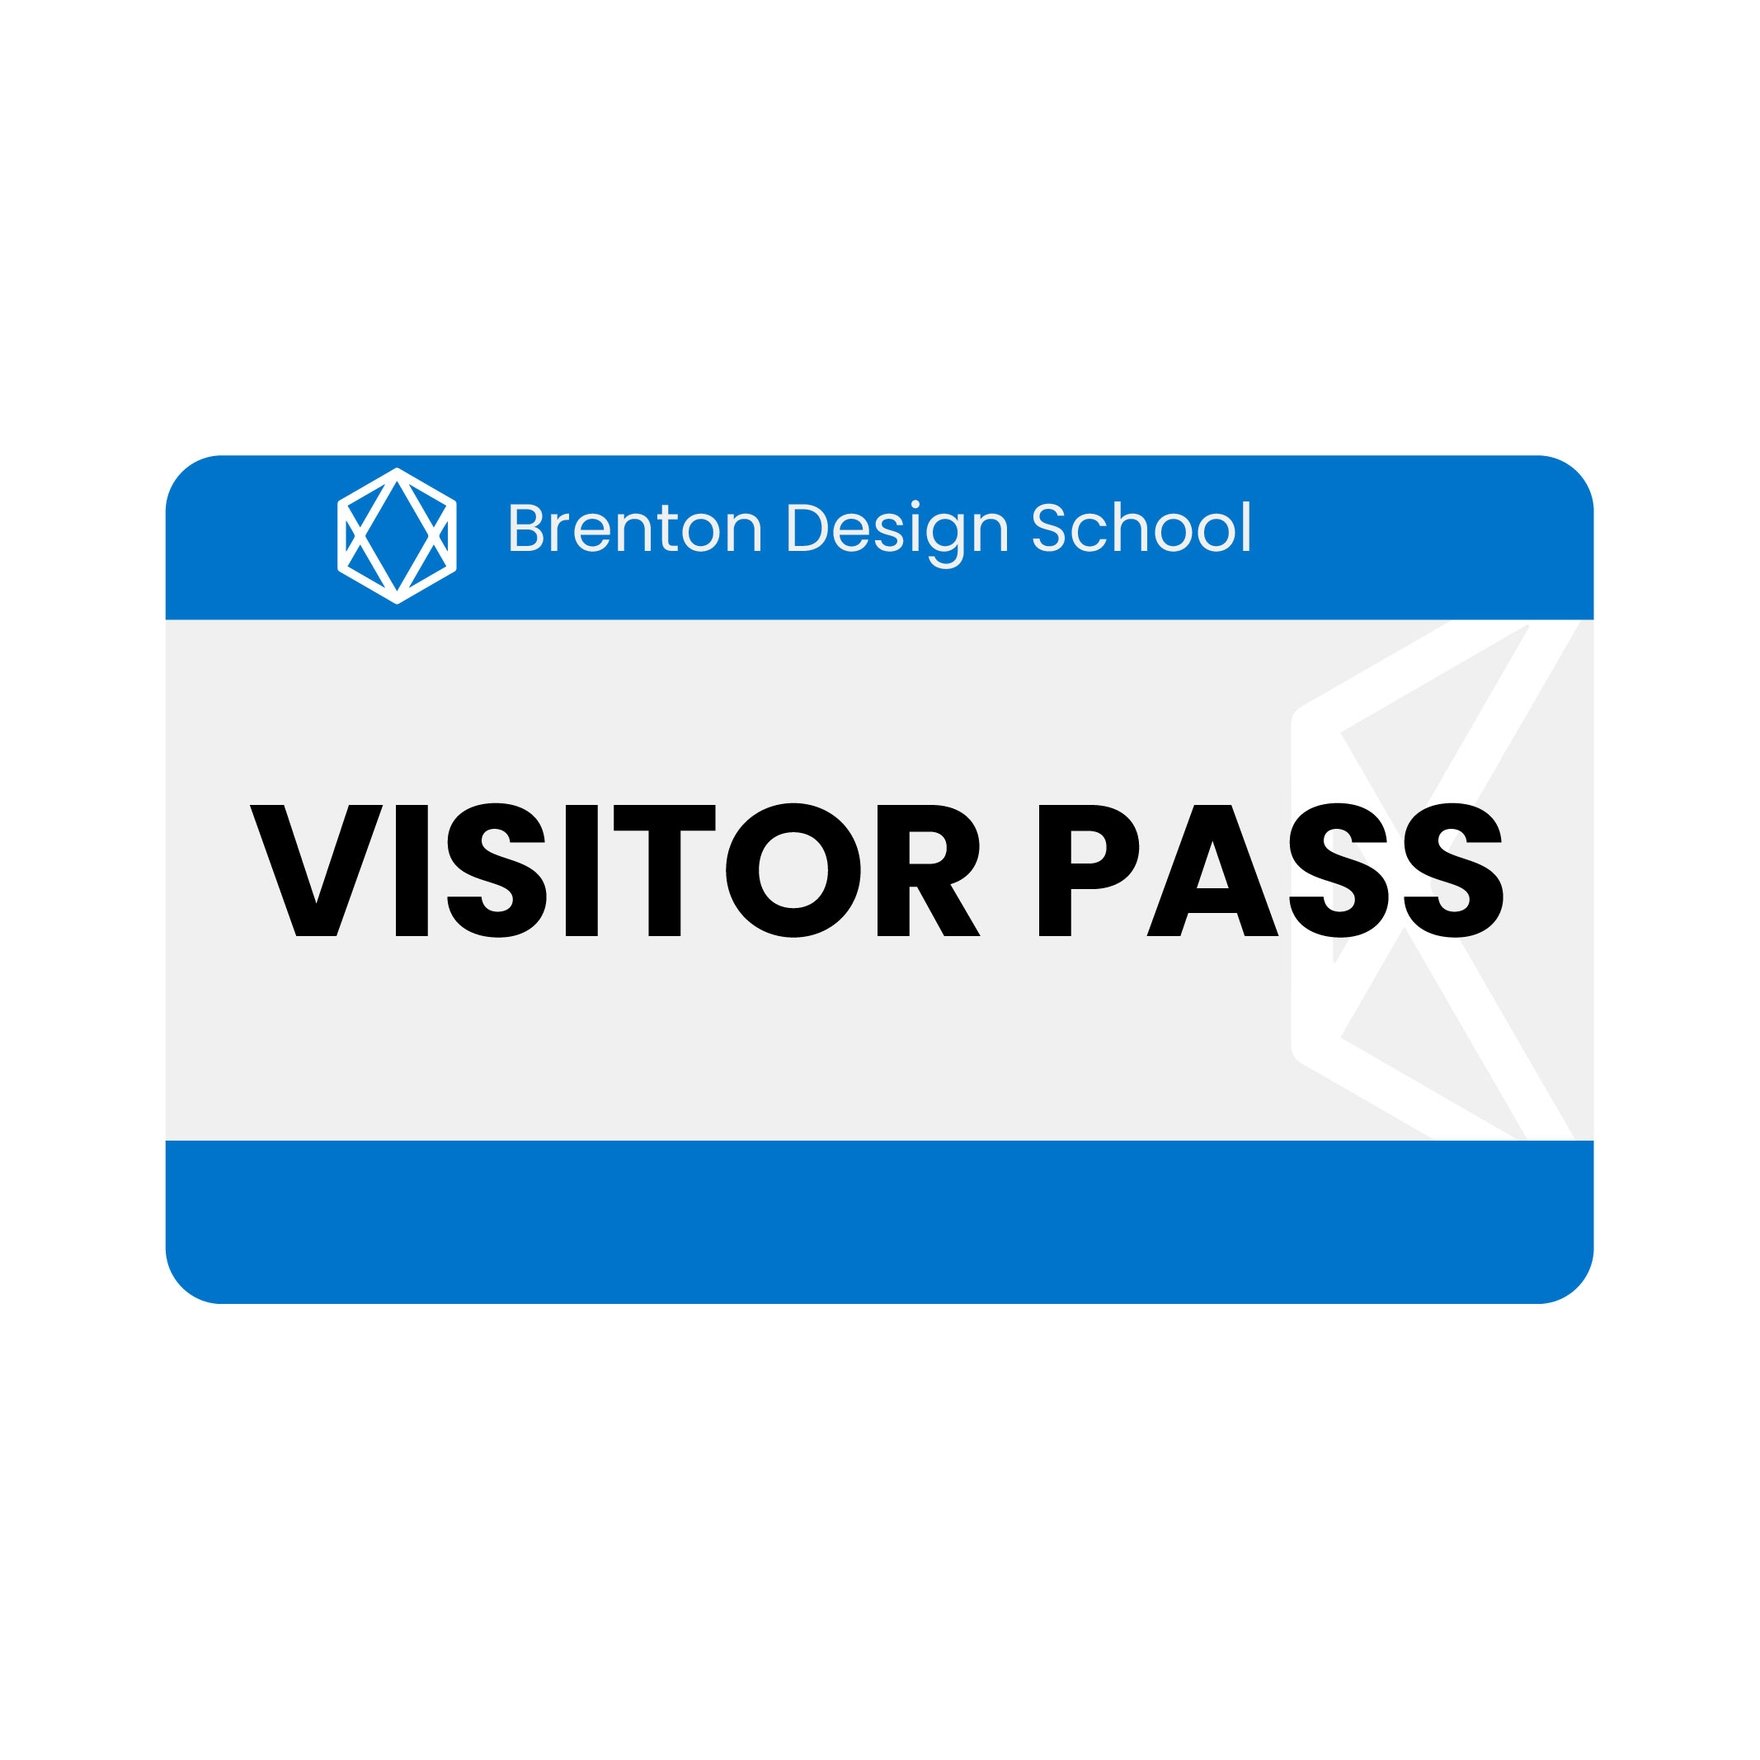 Free Visitor Badge in Illustrator, EPS, SVG, JPG, PNG